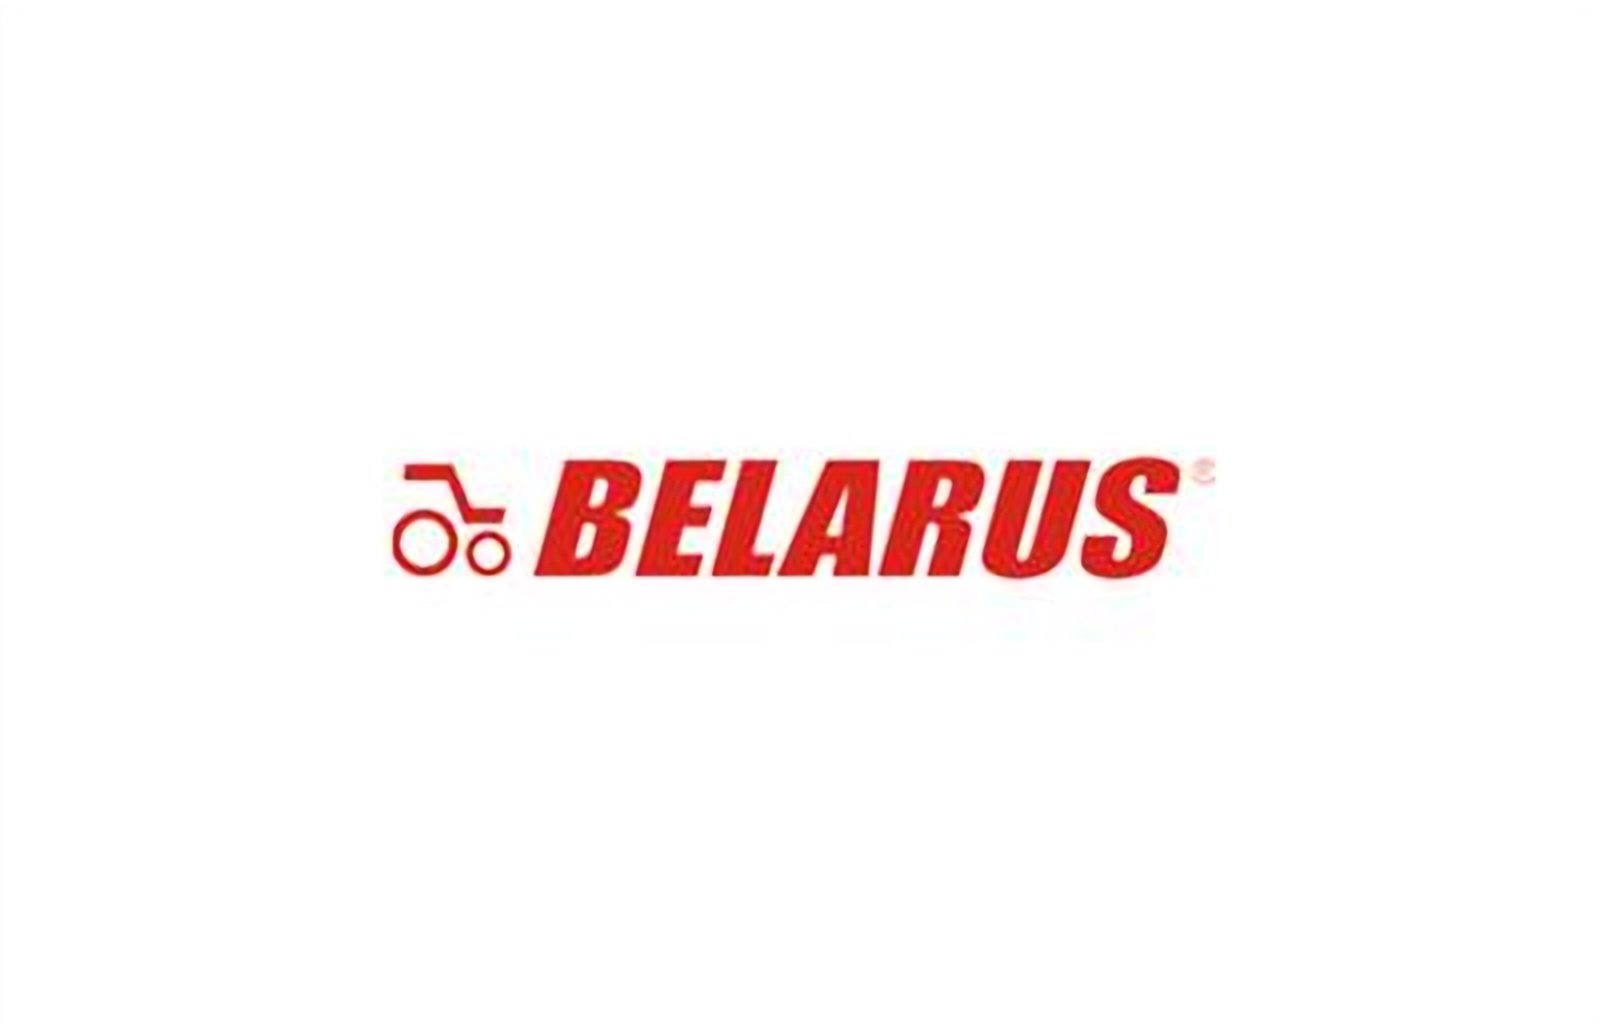 logo della collezione batterie belarus di puntobatterie